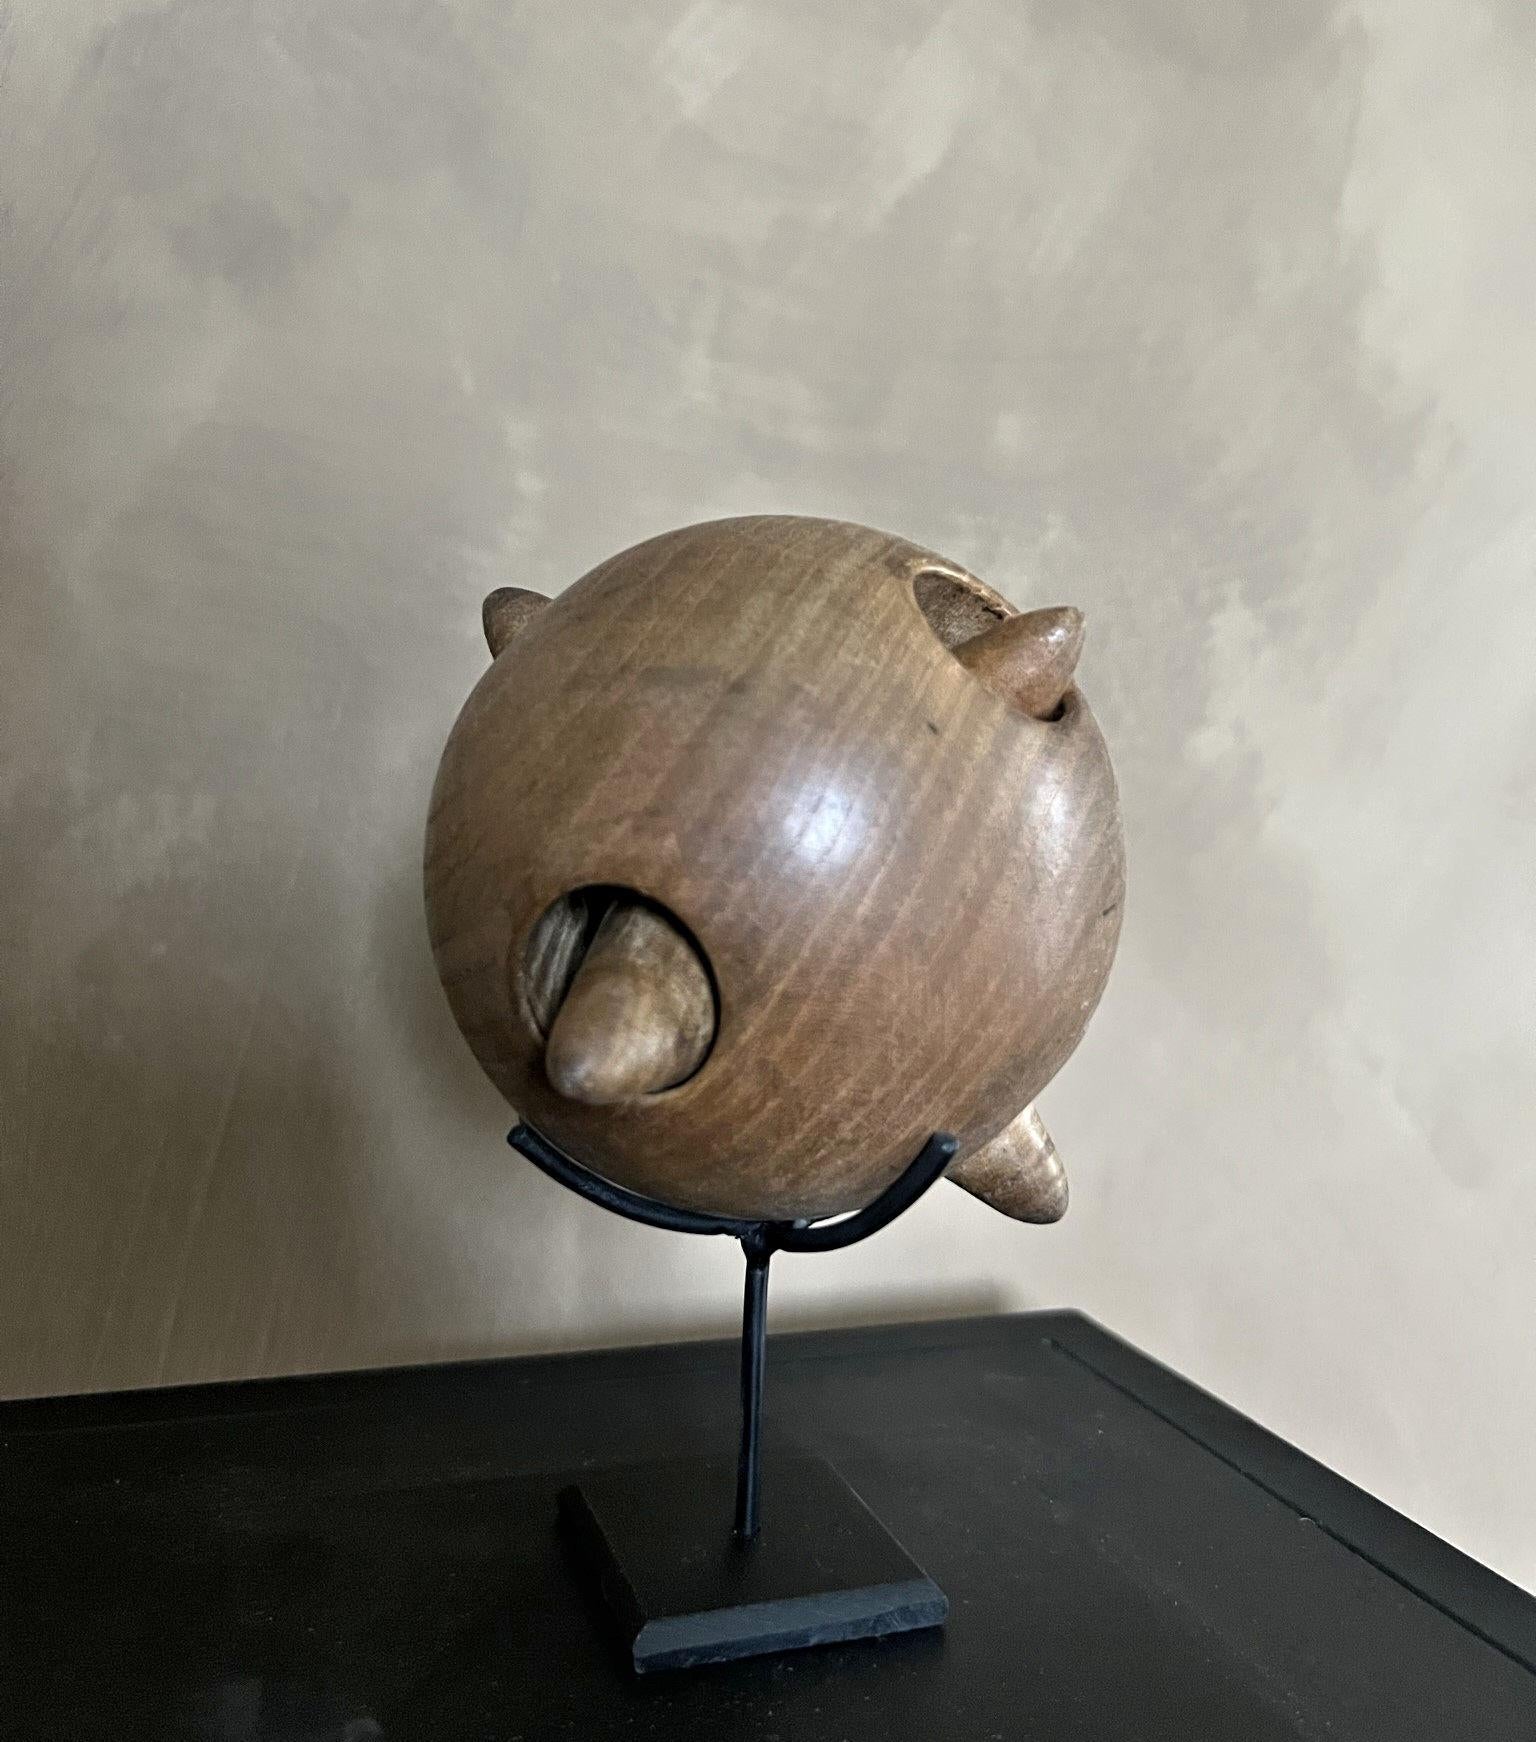 Eine schön gedrechselte Kugel aus Ahornholz, die eine zweite sternförmige Kugel enthält. Objekte wie diese haben ihren Ursprung im 16. Jahrhundert, als das Interesse an Wissenschaft, Mathematik und Kunst durch die ersten Buchdrucke weit verbreitet